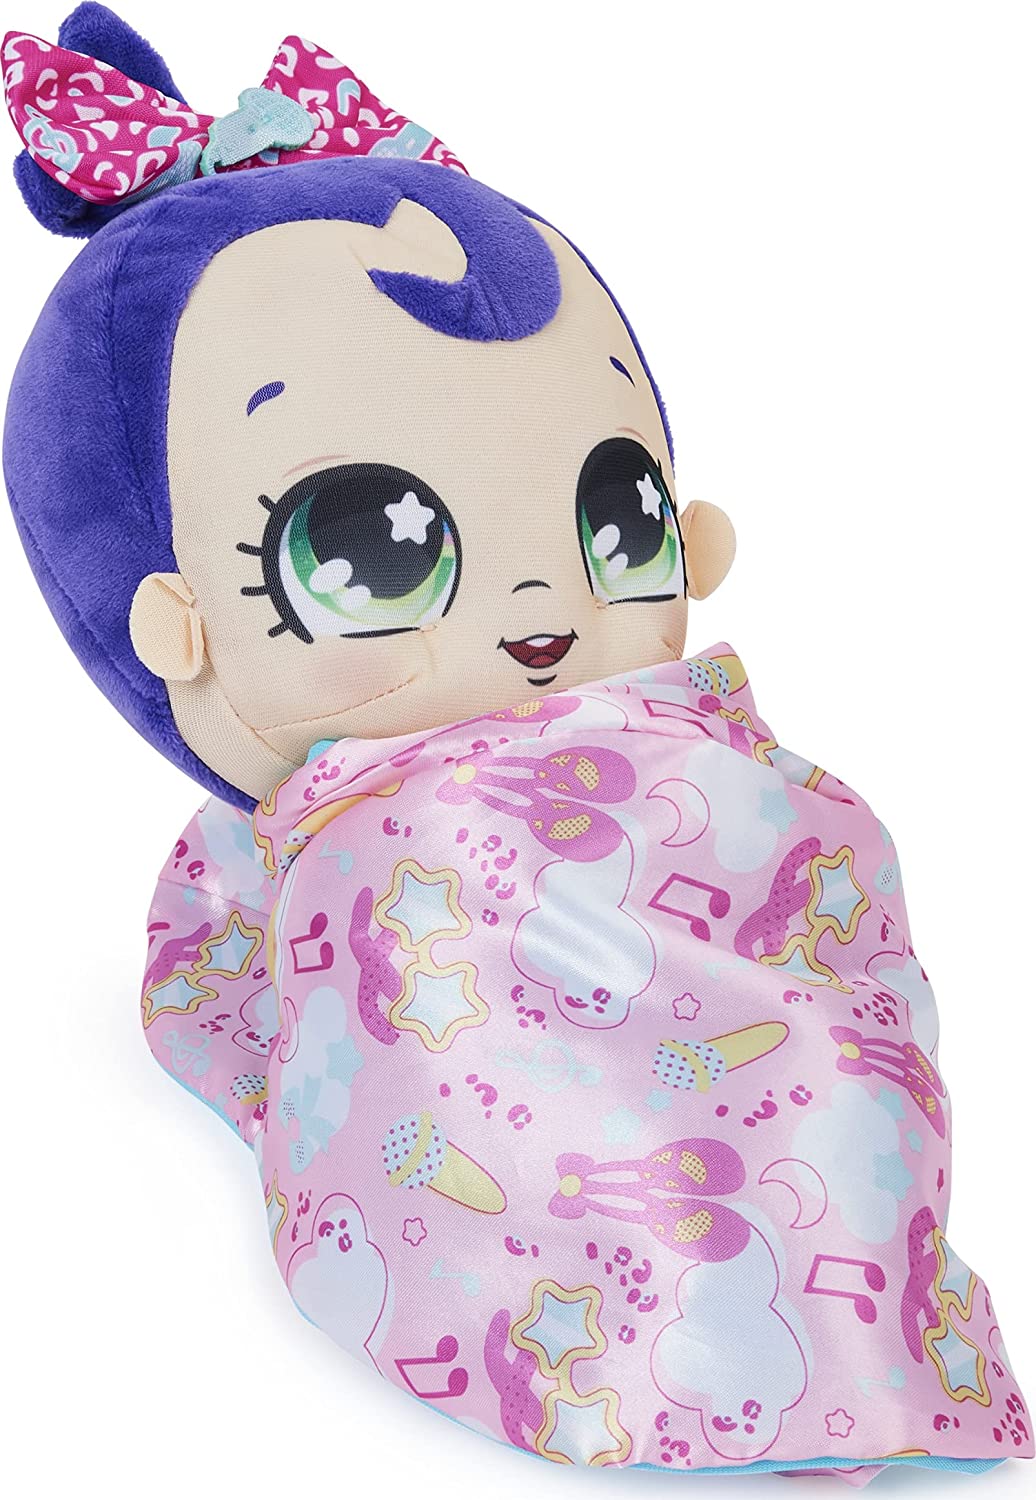 Magic Blanket Babies Surprise Plush Baby Doll con más de 80 sonidos y reacciones,